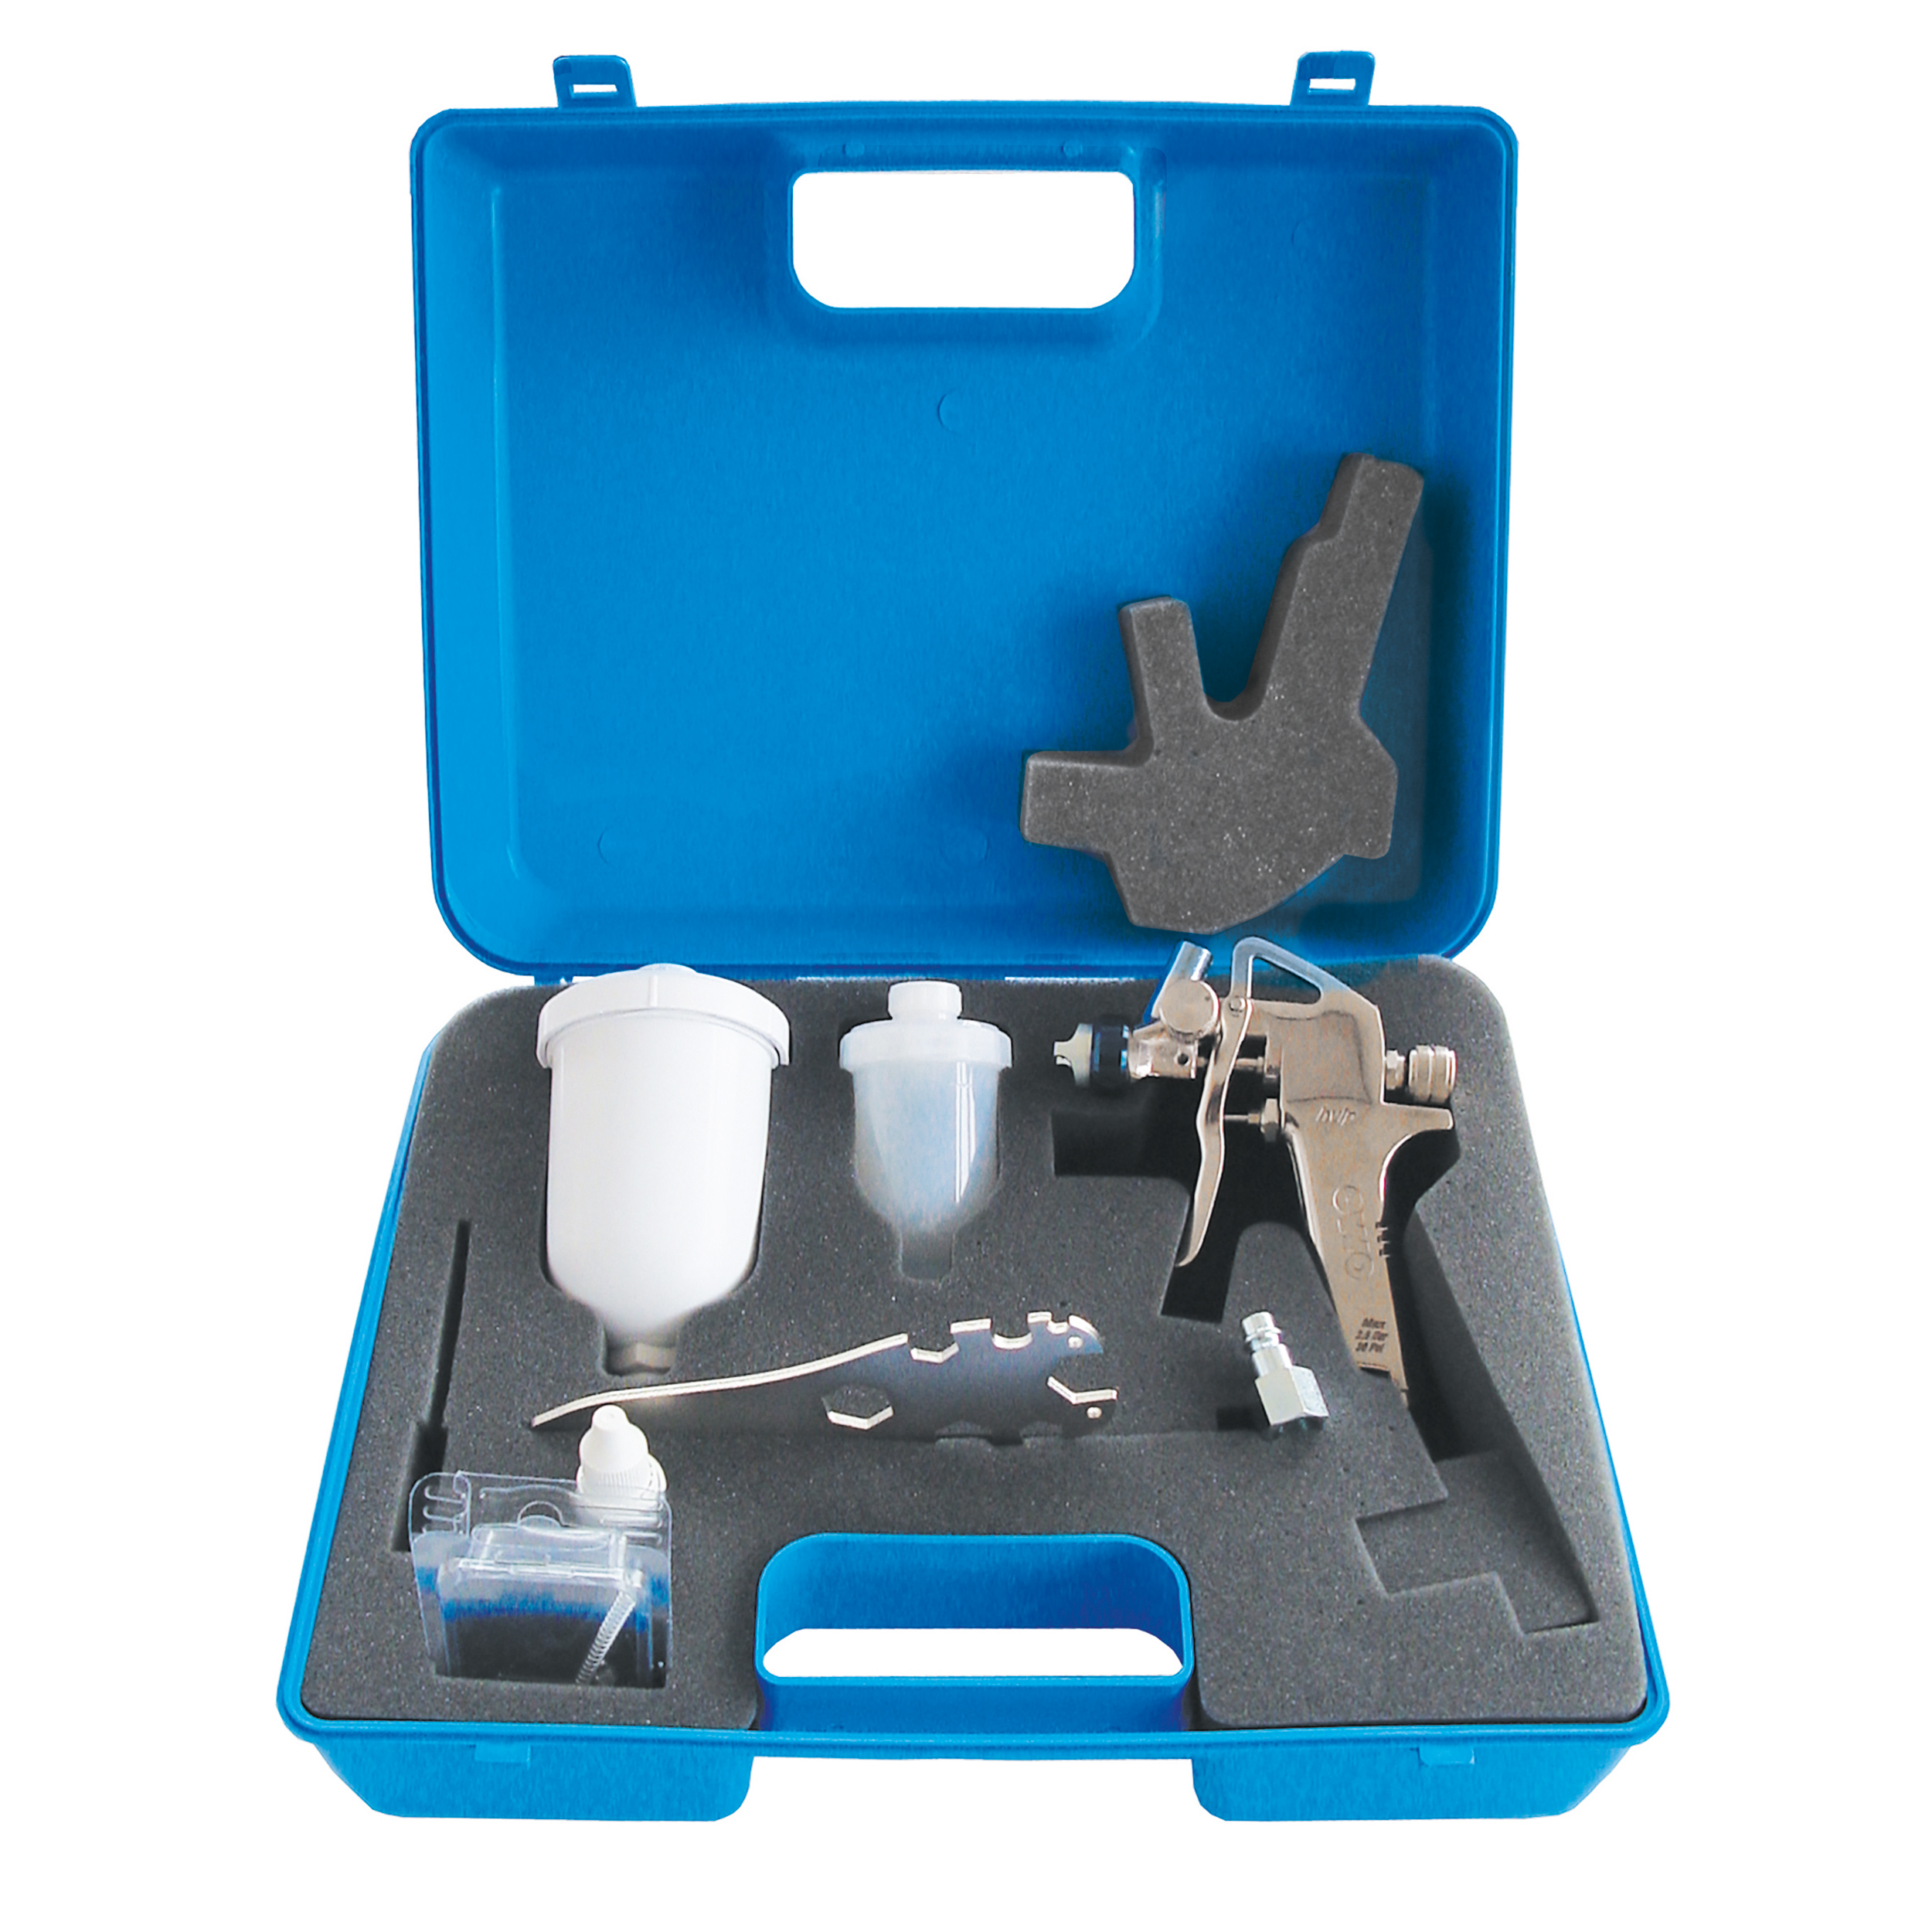 HVLP-set minipaint, case, paint gun nozzle Ø0,7 mm, 2 cups, spare part set, nozzle key, cleaning set, coupling nipple, care oil